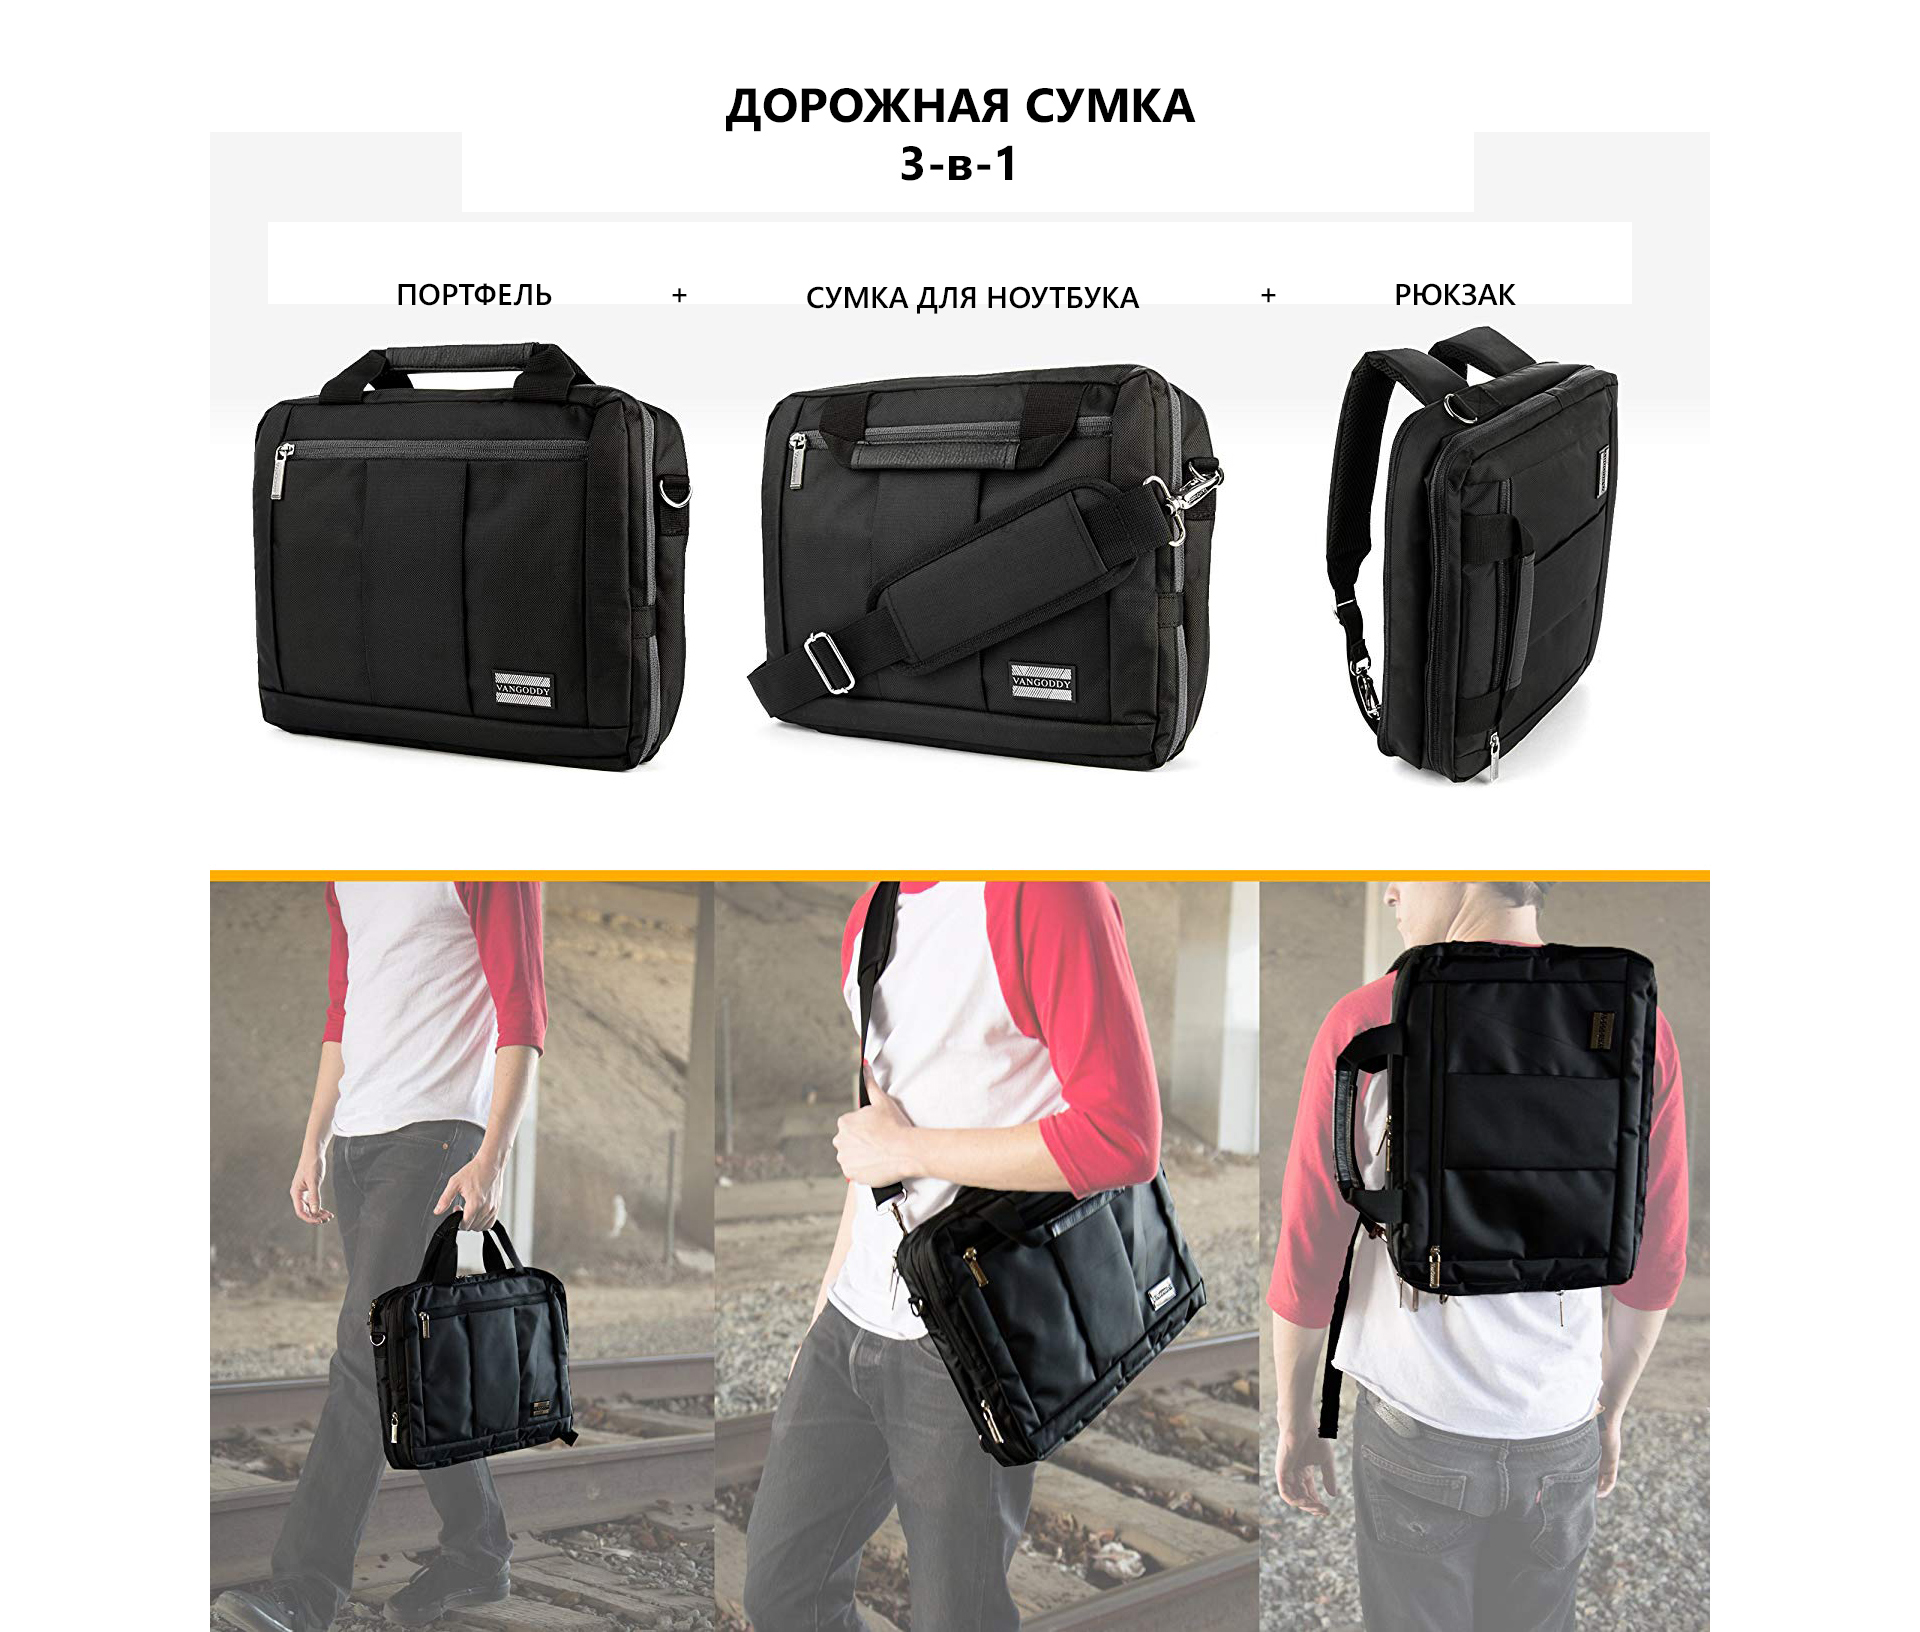 Аксессуар 3-в-1: портфель, сумка для ноутбука и рюкзак